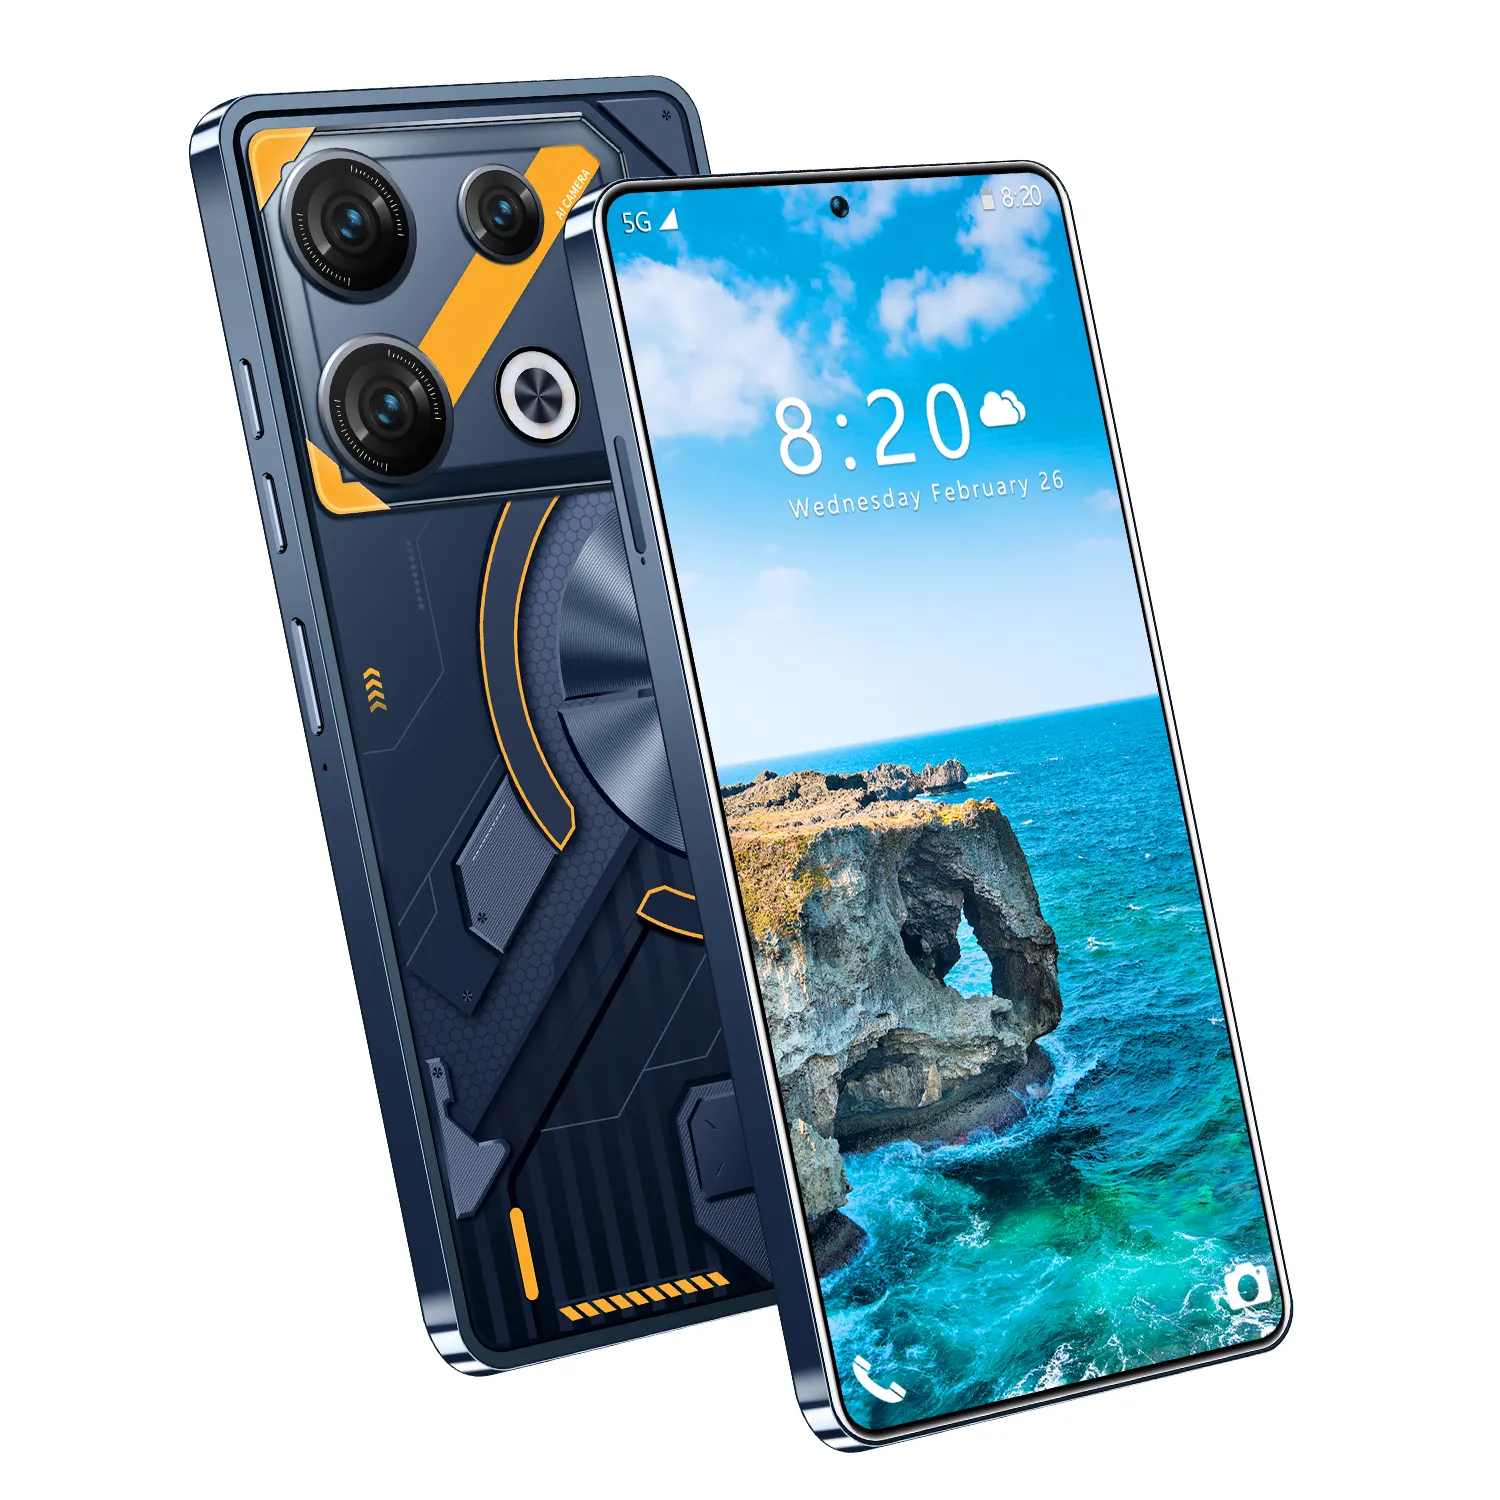 هاتف GT 10 PRO يعمل بنظام الأندرويد 10 خلوي 3 جيجابايت+32 جيجابايت هاتف خلوي 6.7 بوصة هاتف محمول ذكي هاتف محمول نسخة عالمية عالية الجودة 4G HD OEM LCD 5 ميجابكسل